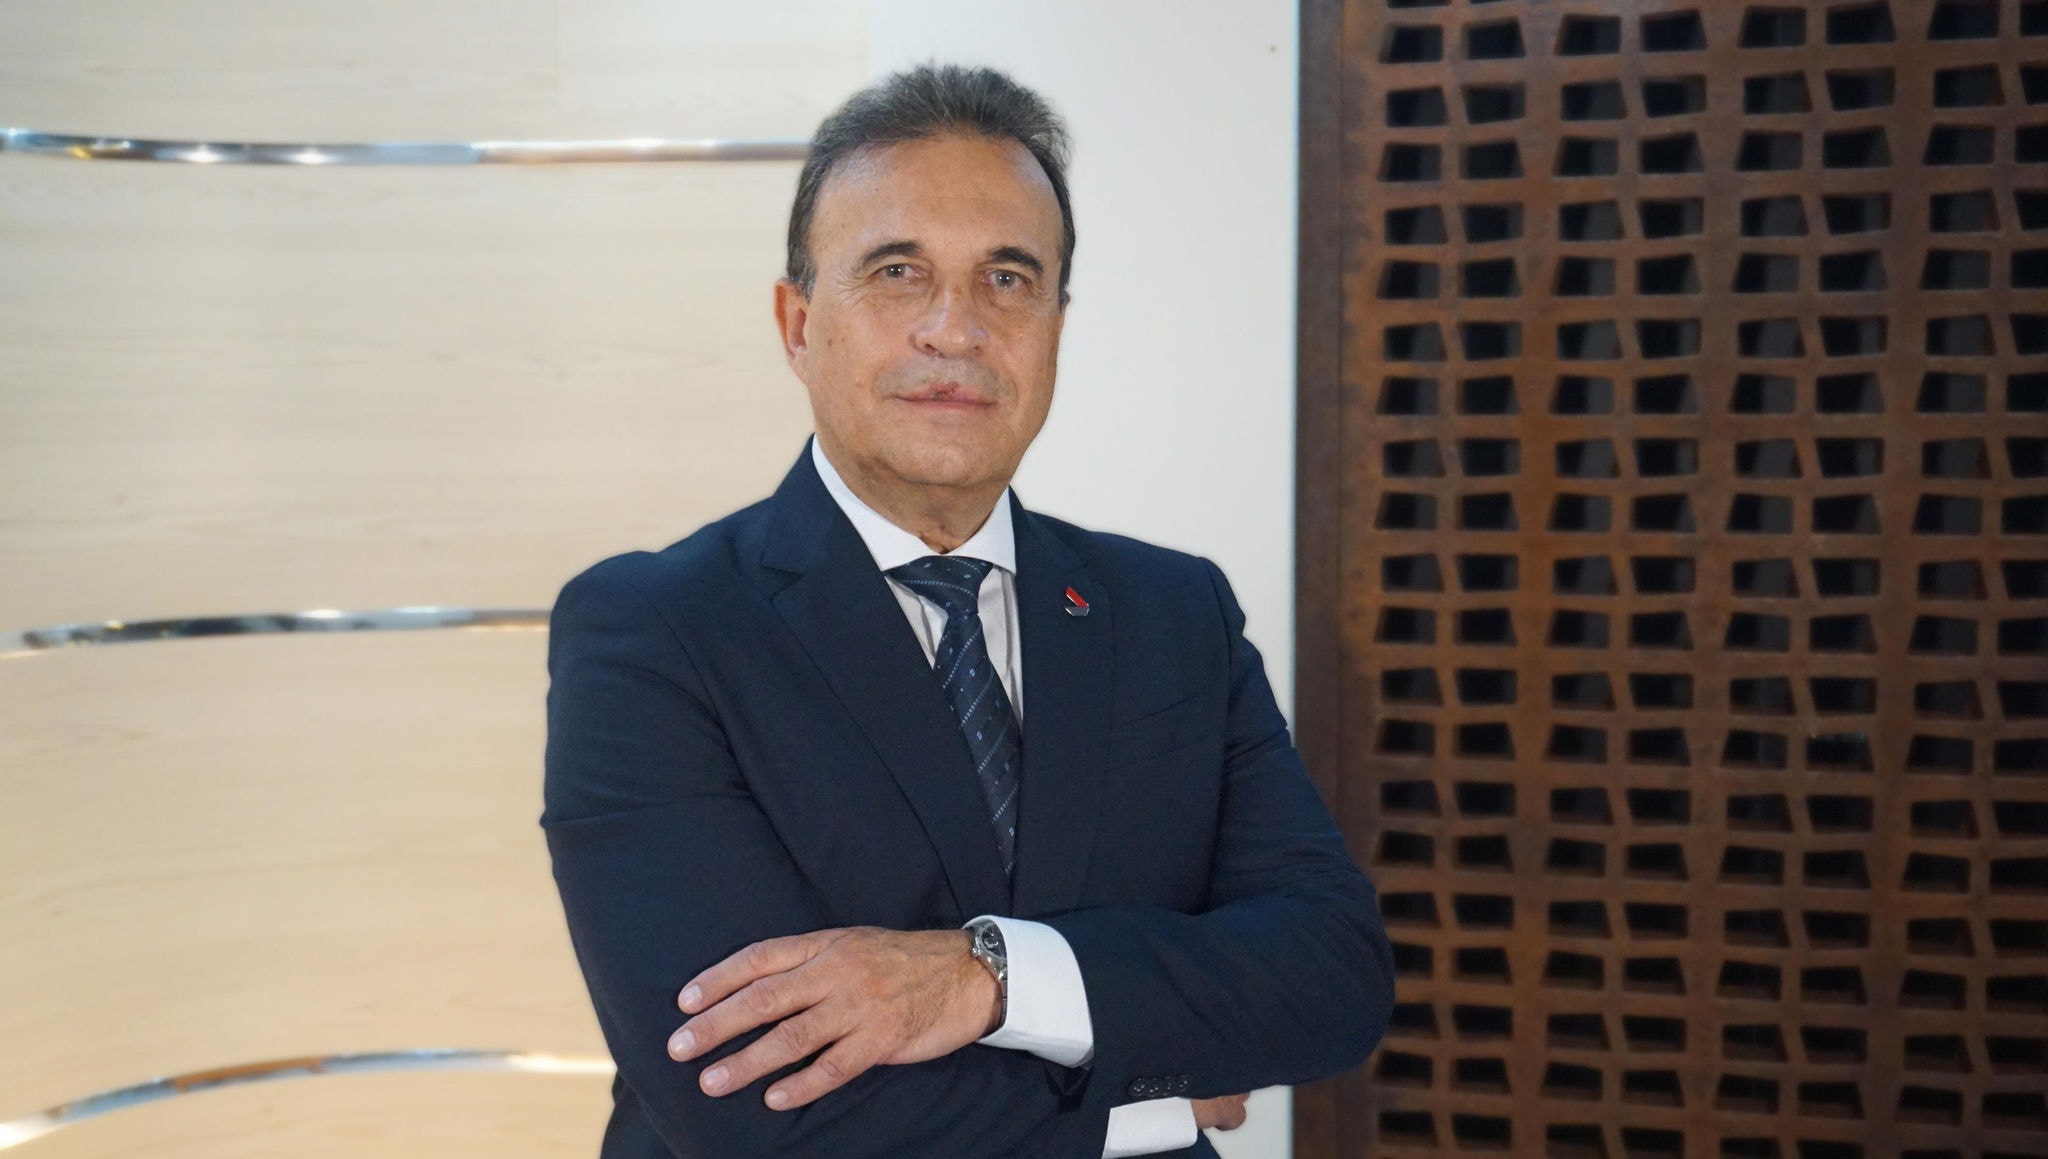 Gabriel Viégas Neto é administrador de empresas e tem uma experiência de quase 40 anos no setor financeiro.